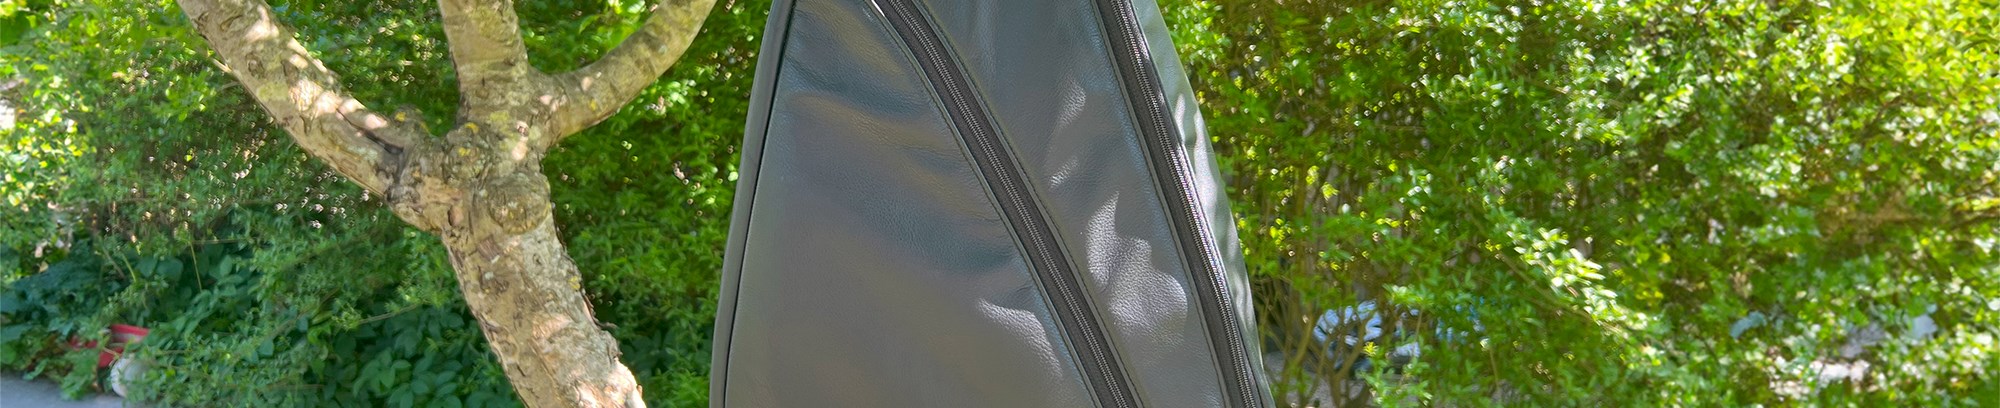 Hjemmelavet sort læder rygsæk/skuldertaske, der hænger i et træ i en solrig have (lavet af Inge Ryborg Lund)